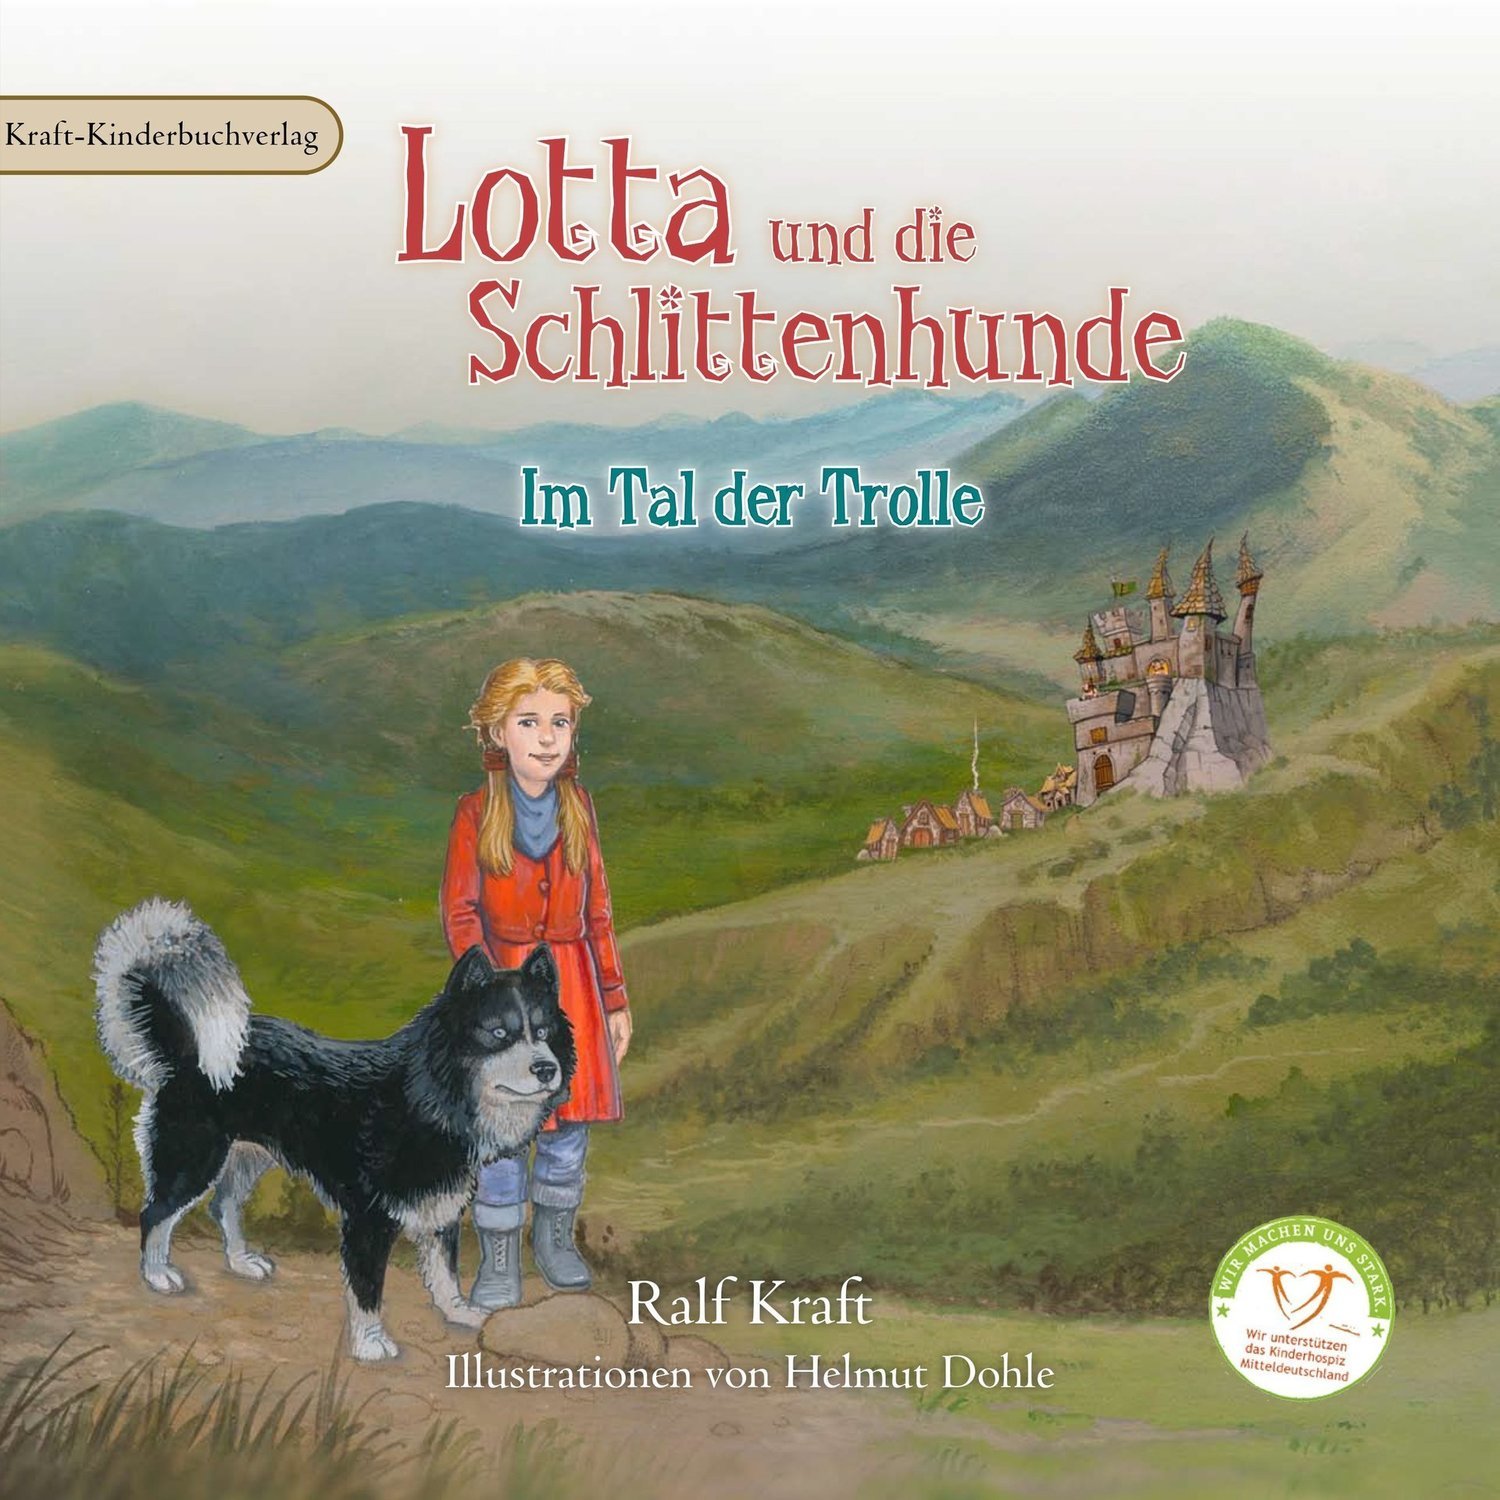 Lotta und die Schlittenhunde Band 2 "Im Tal der Trolle"